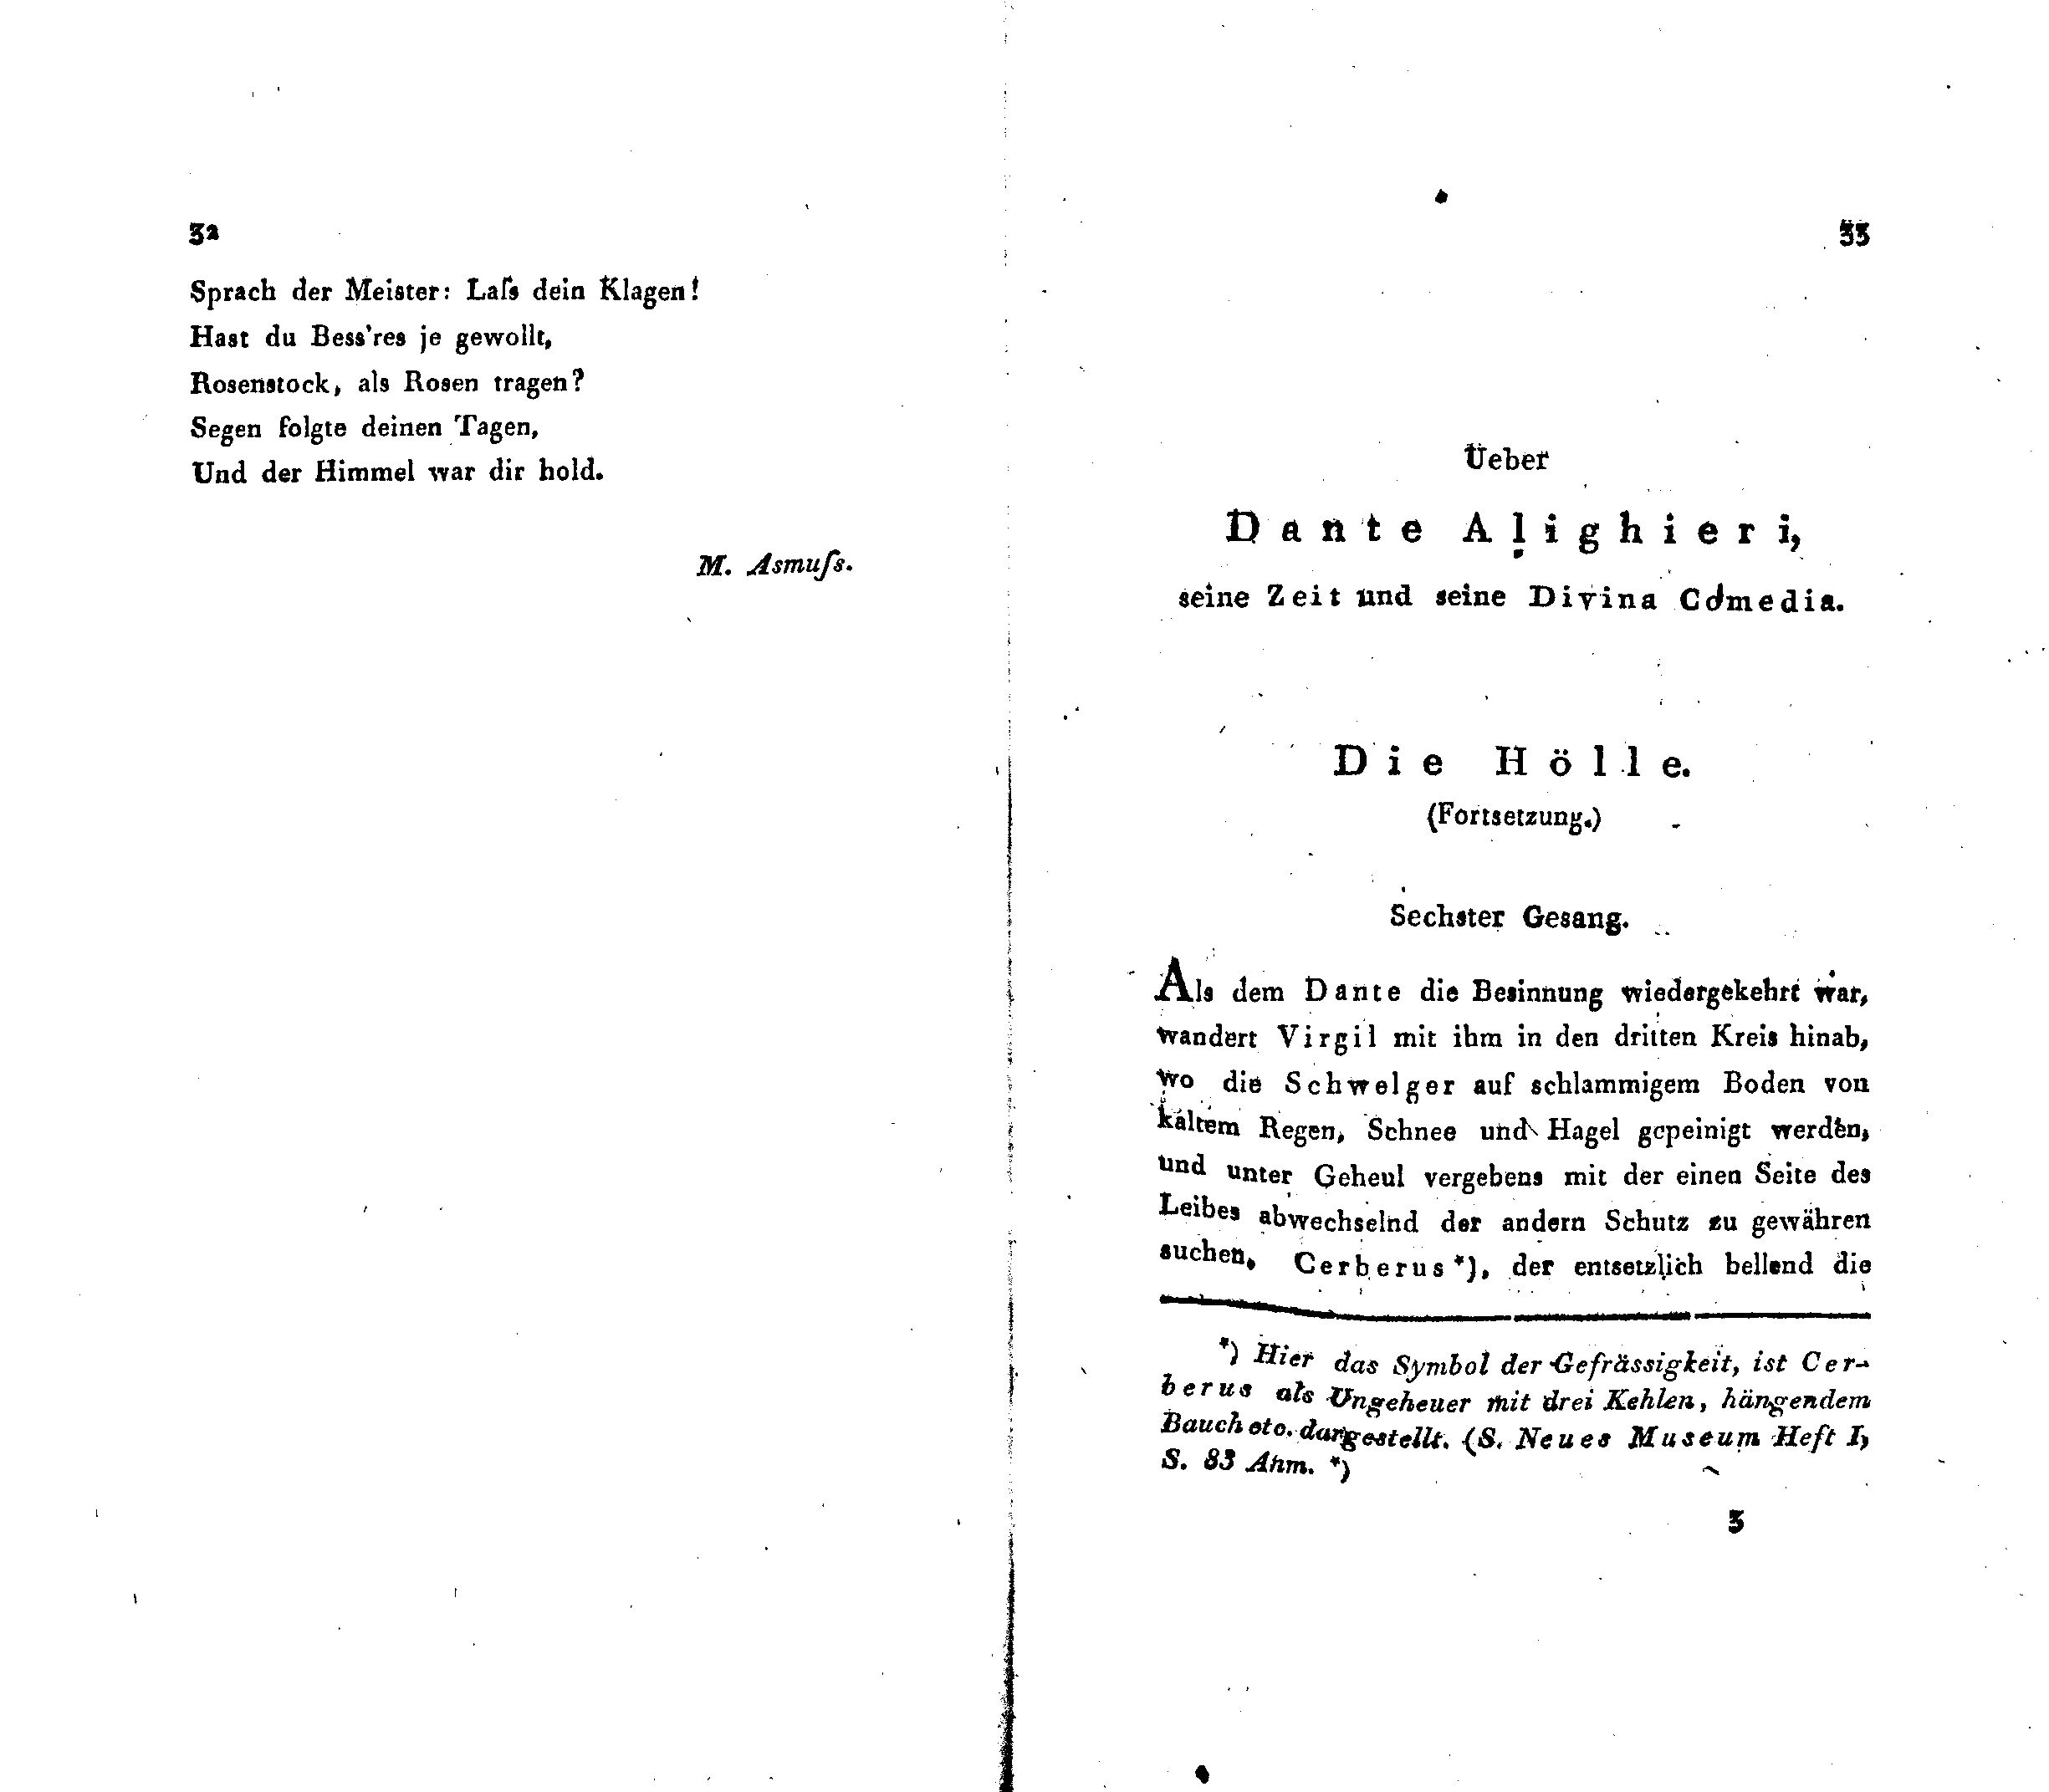 Ueber Dante Alighieri, seine Zeit und seine Divina Comedia [2] (1825) | 1. (32-33) Main body of text